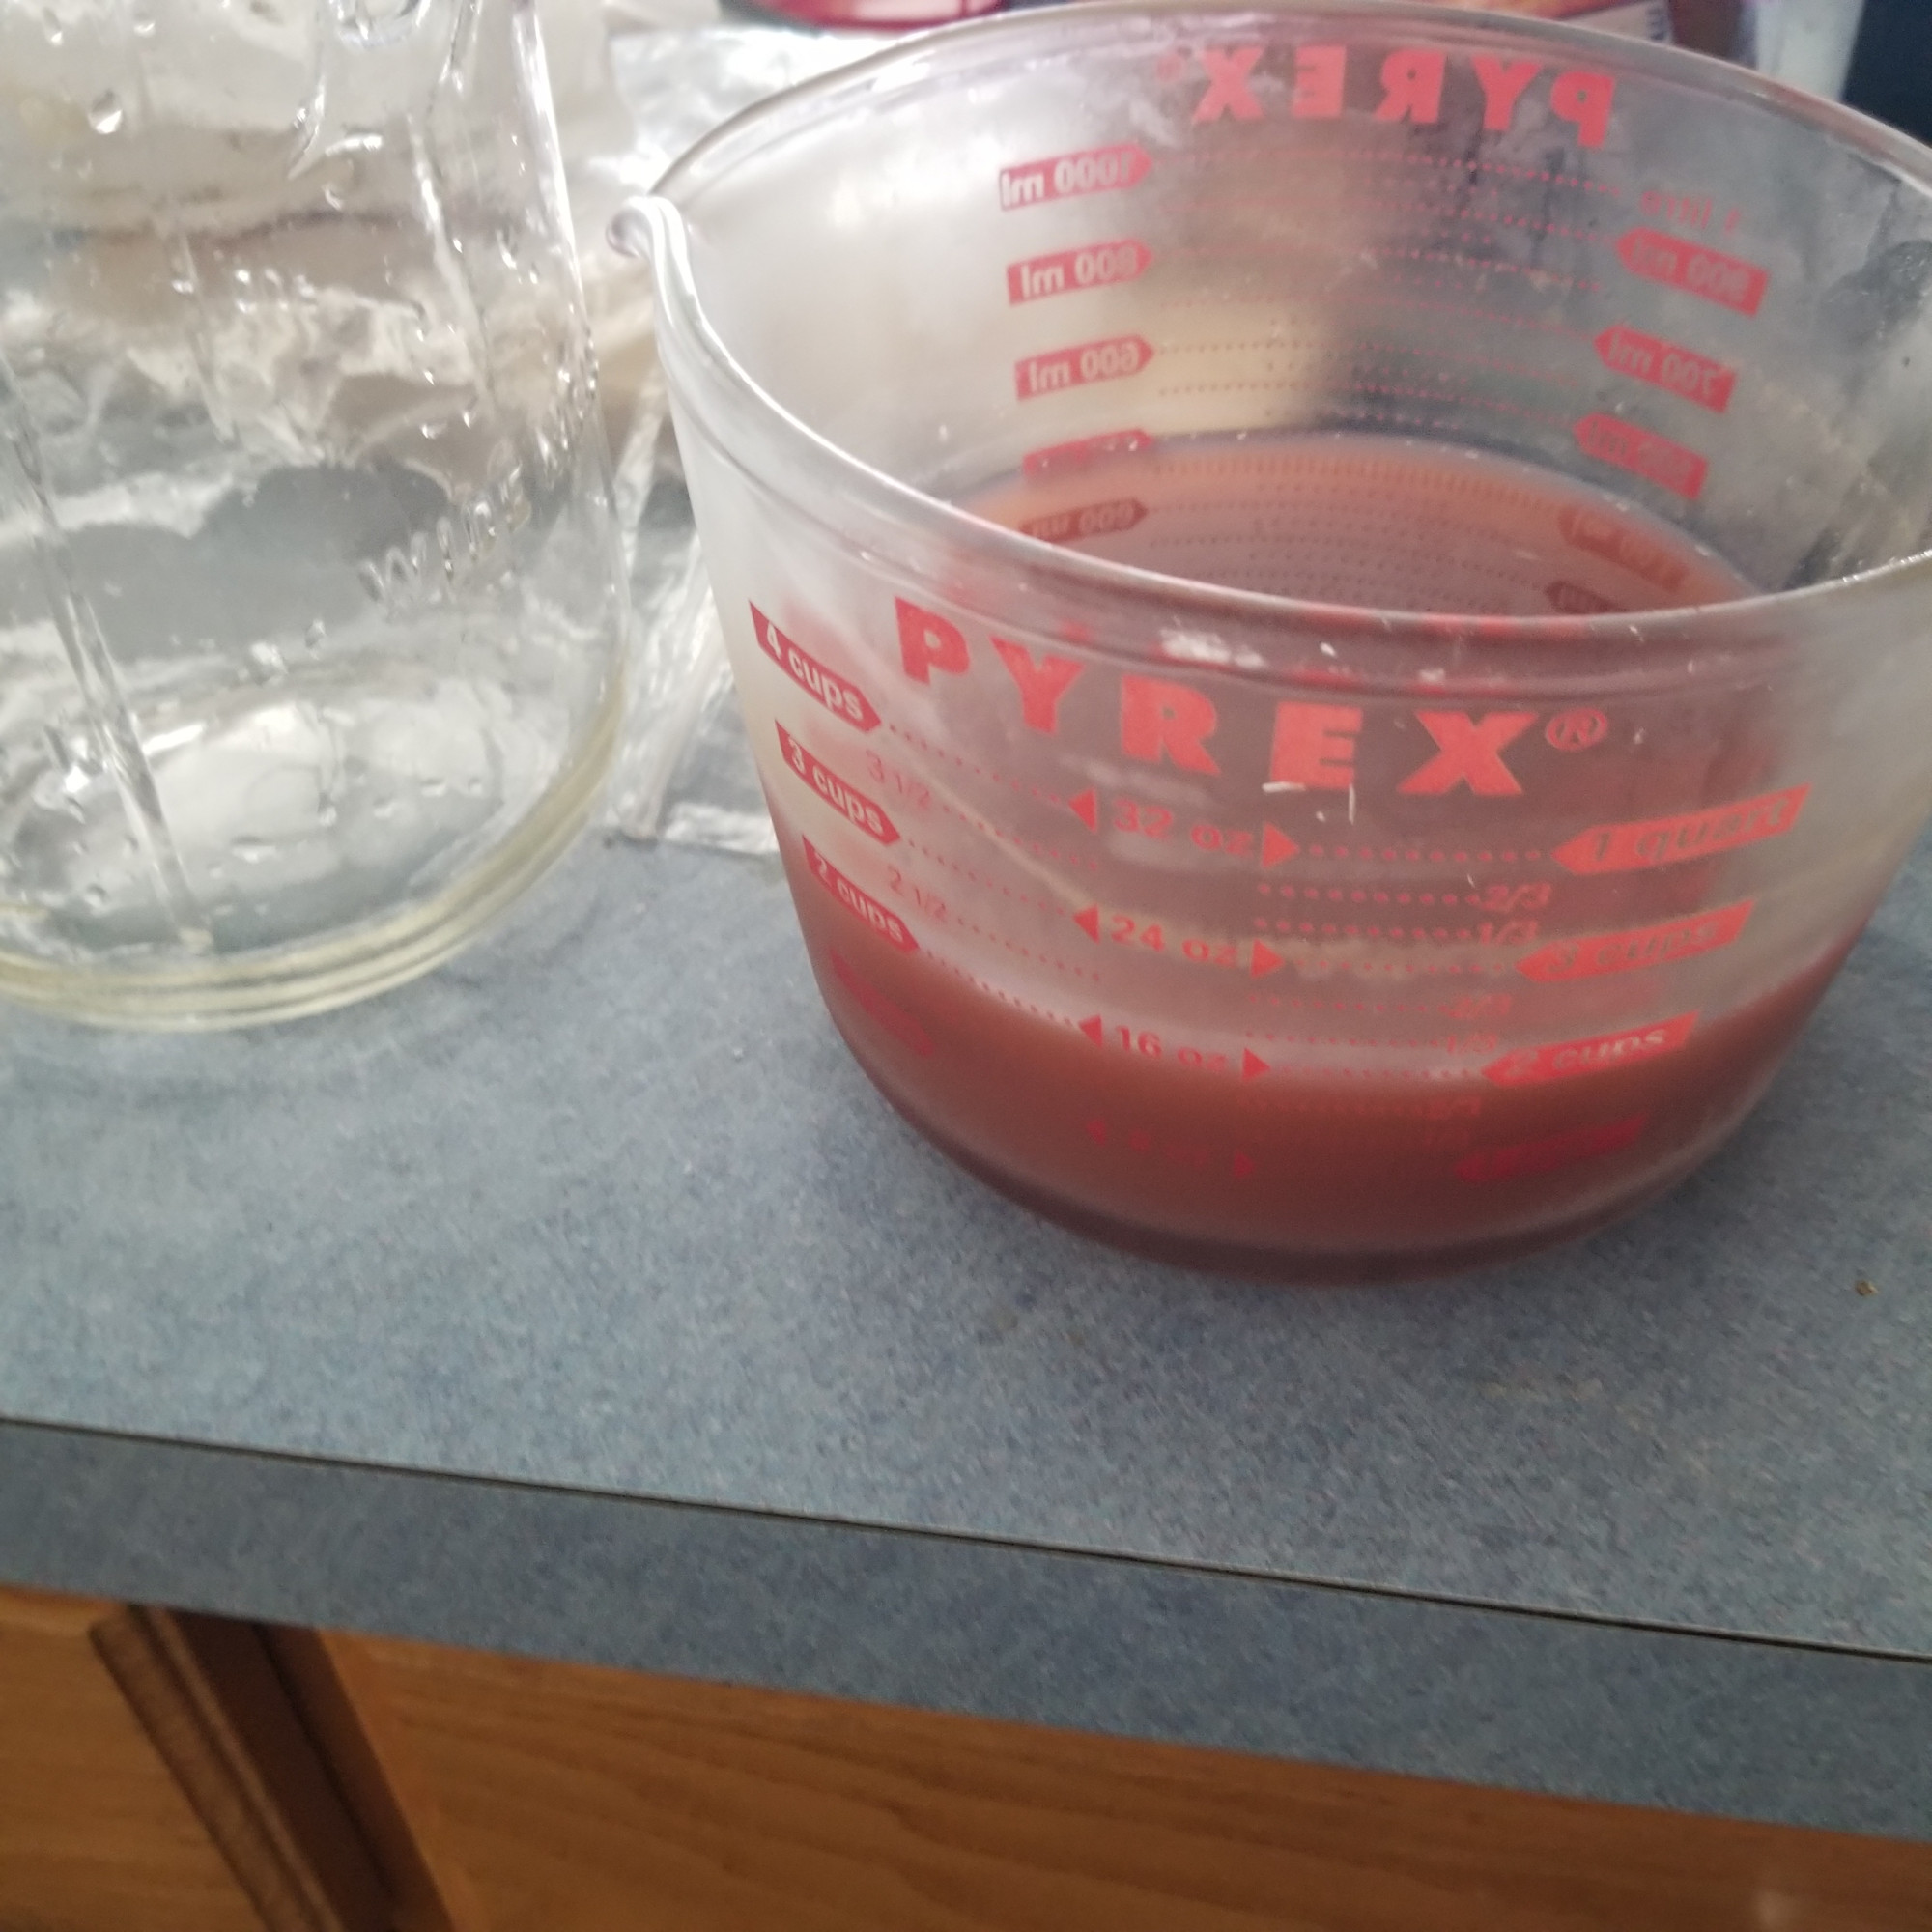 rhubarb juice